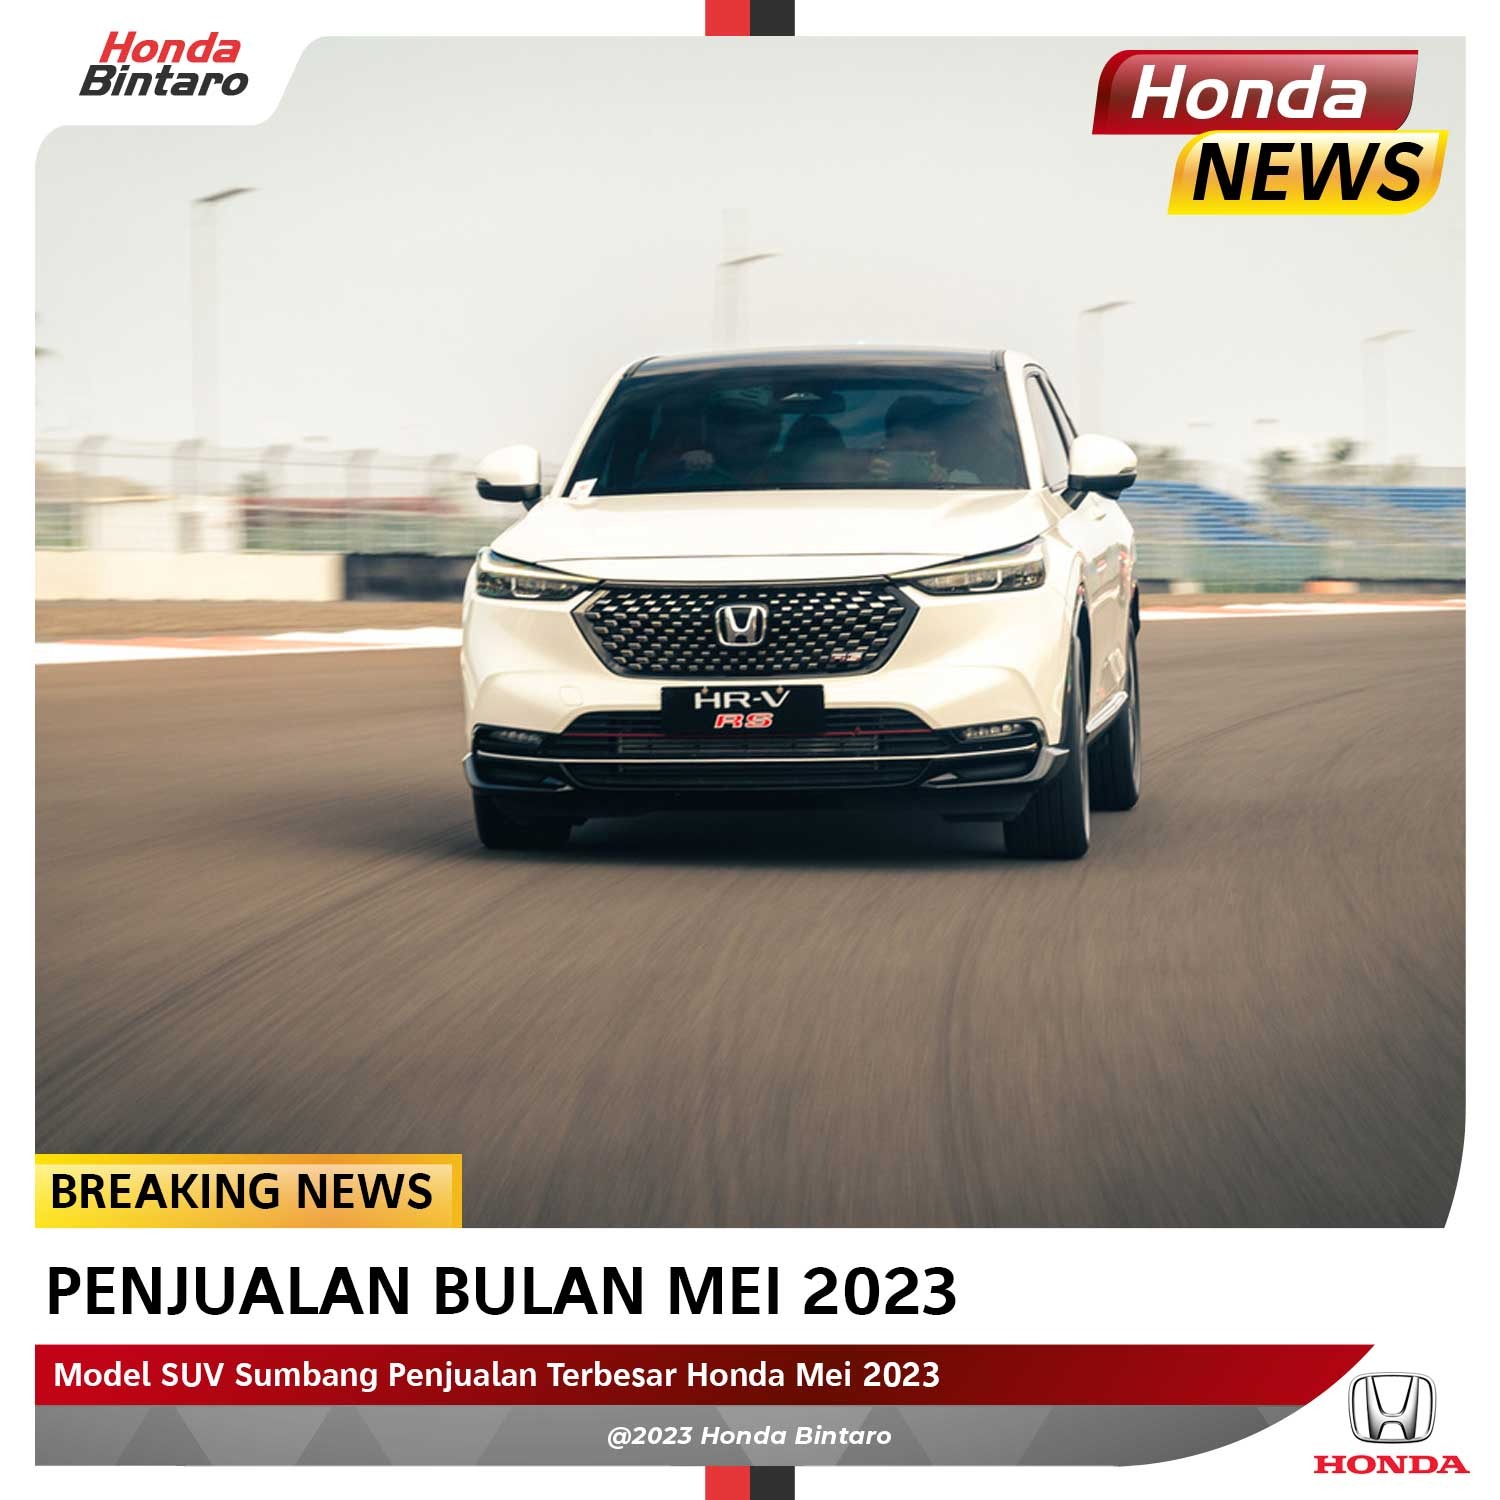 Model SUV Sumbang Penjualan Terbesar Honda Mei 2023